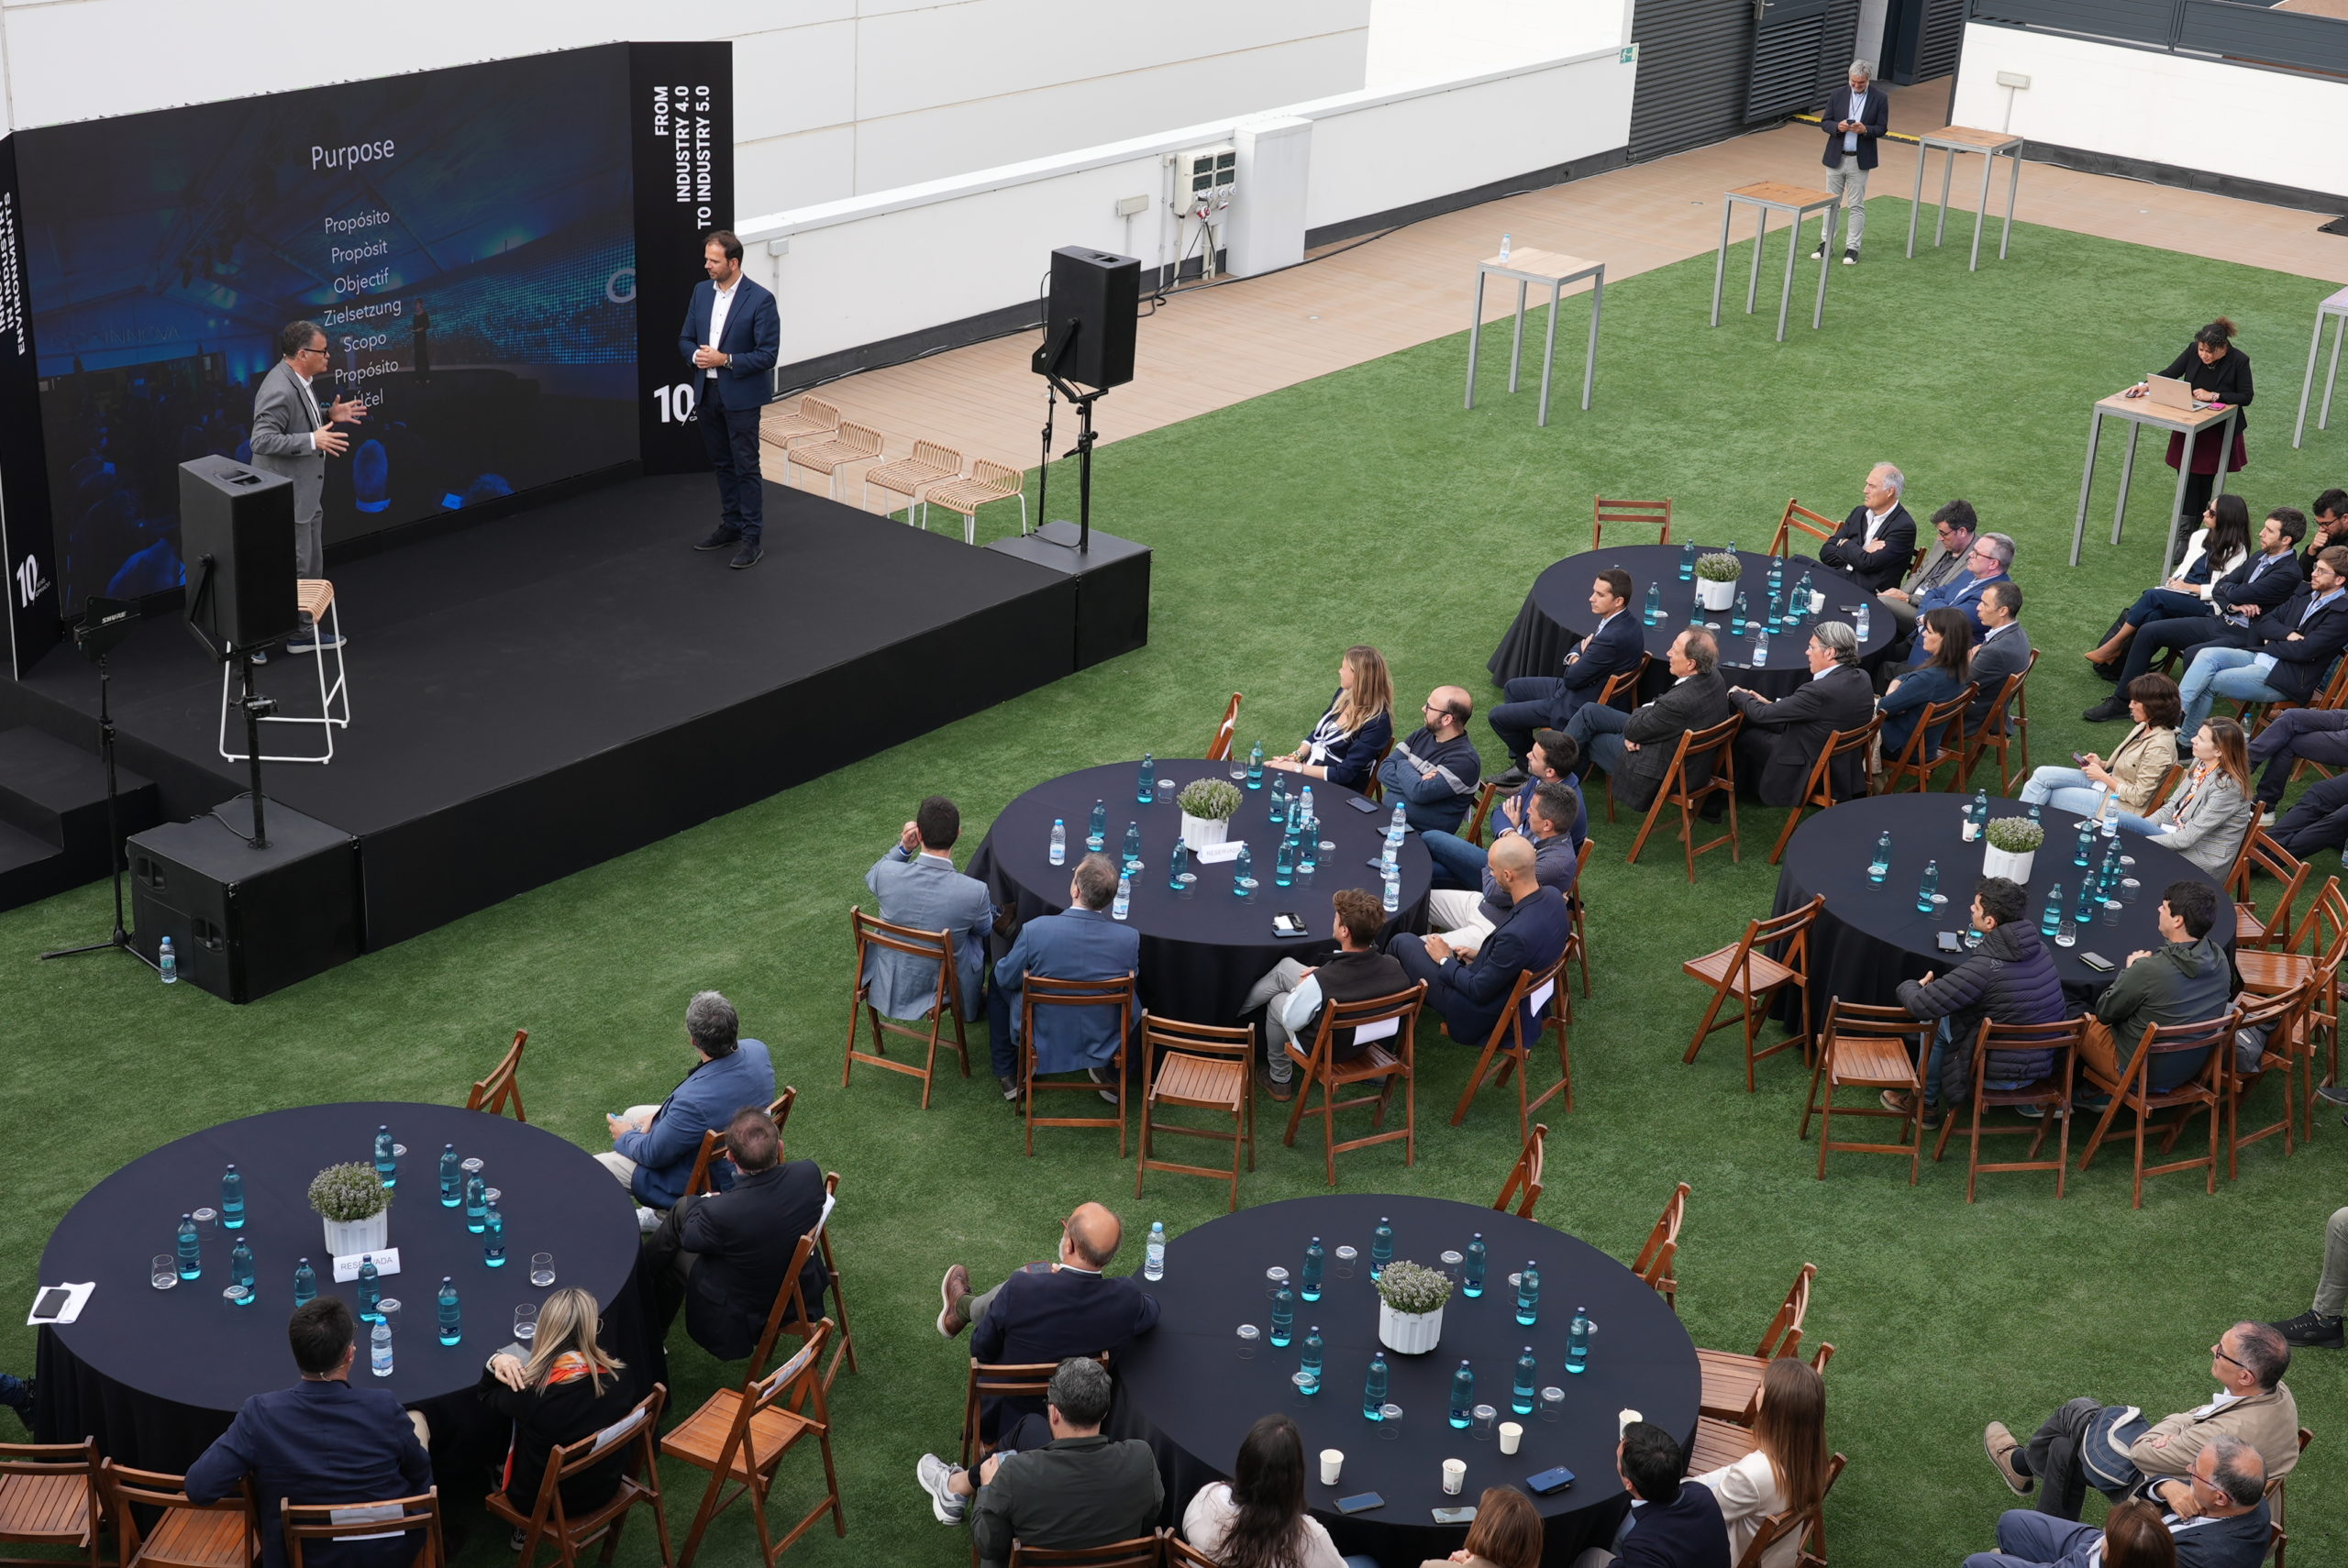 GPAINNOVA reúne a 150 empresas y profesionales para debatir sobre innovación en su 10.º aniversario